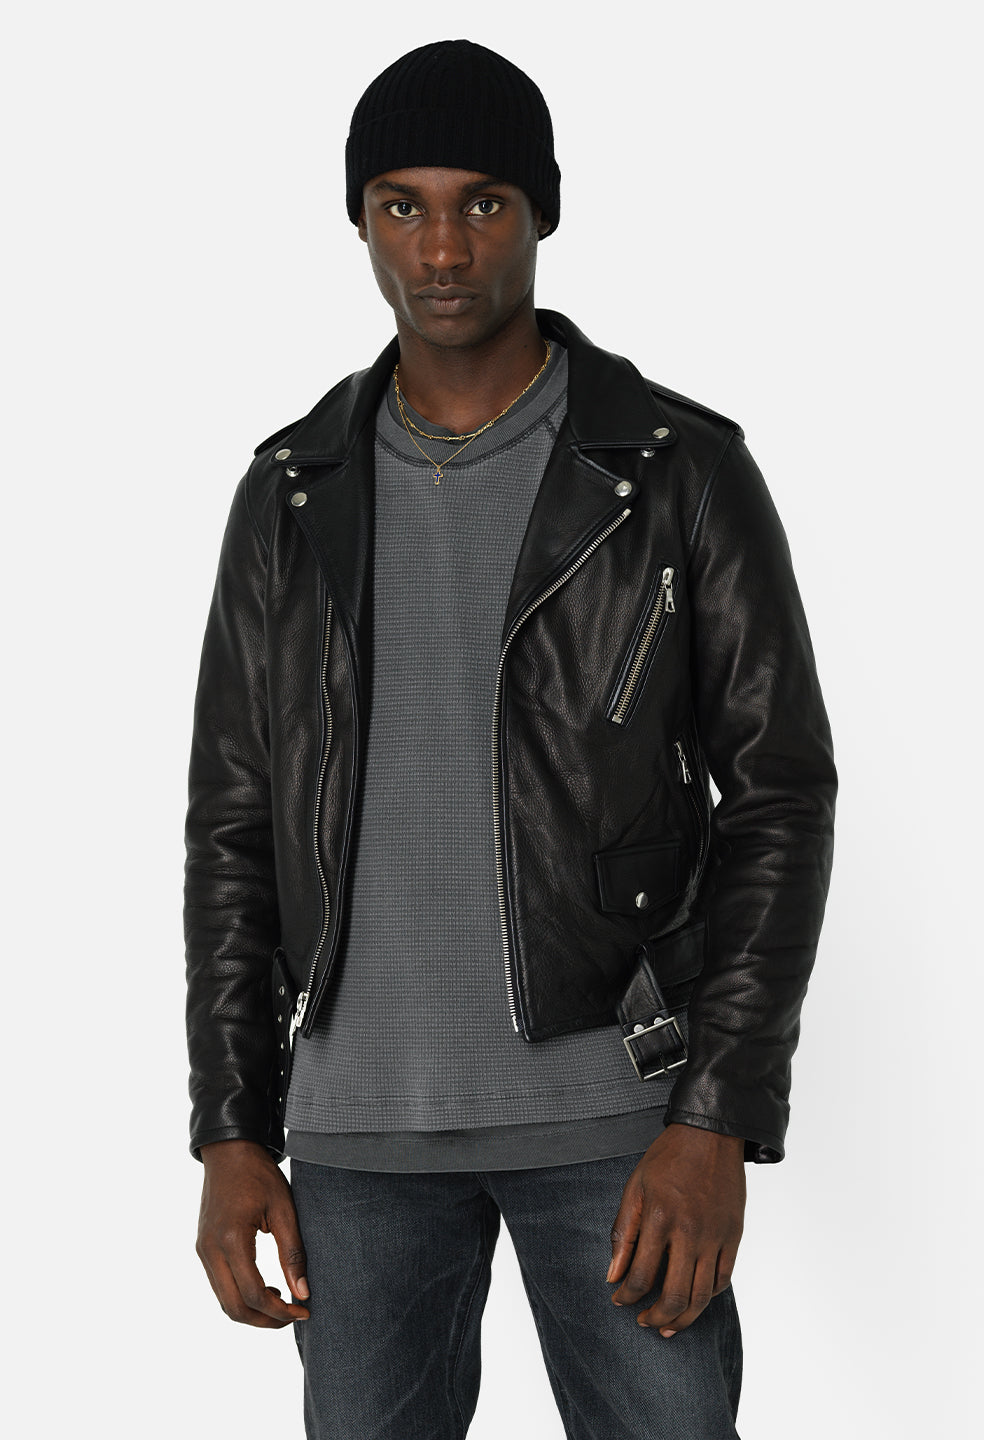 Allaric Alley Black Leather Biker Jacket | The Jacket Maker